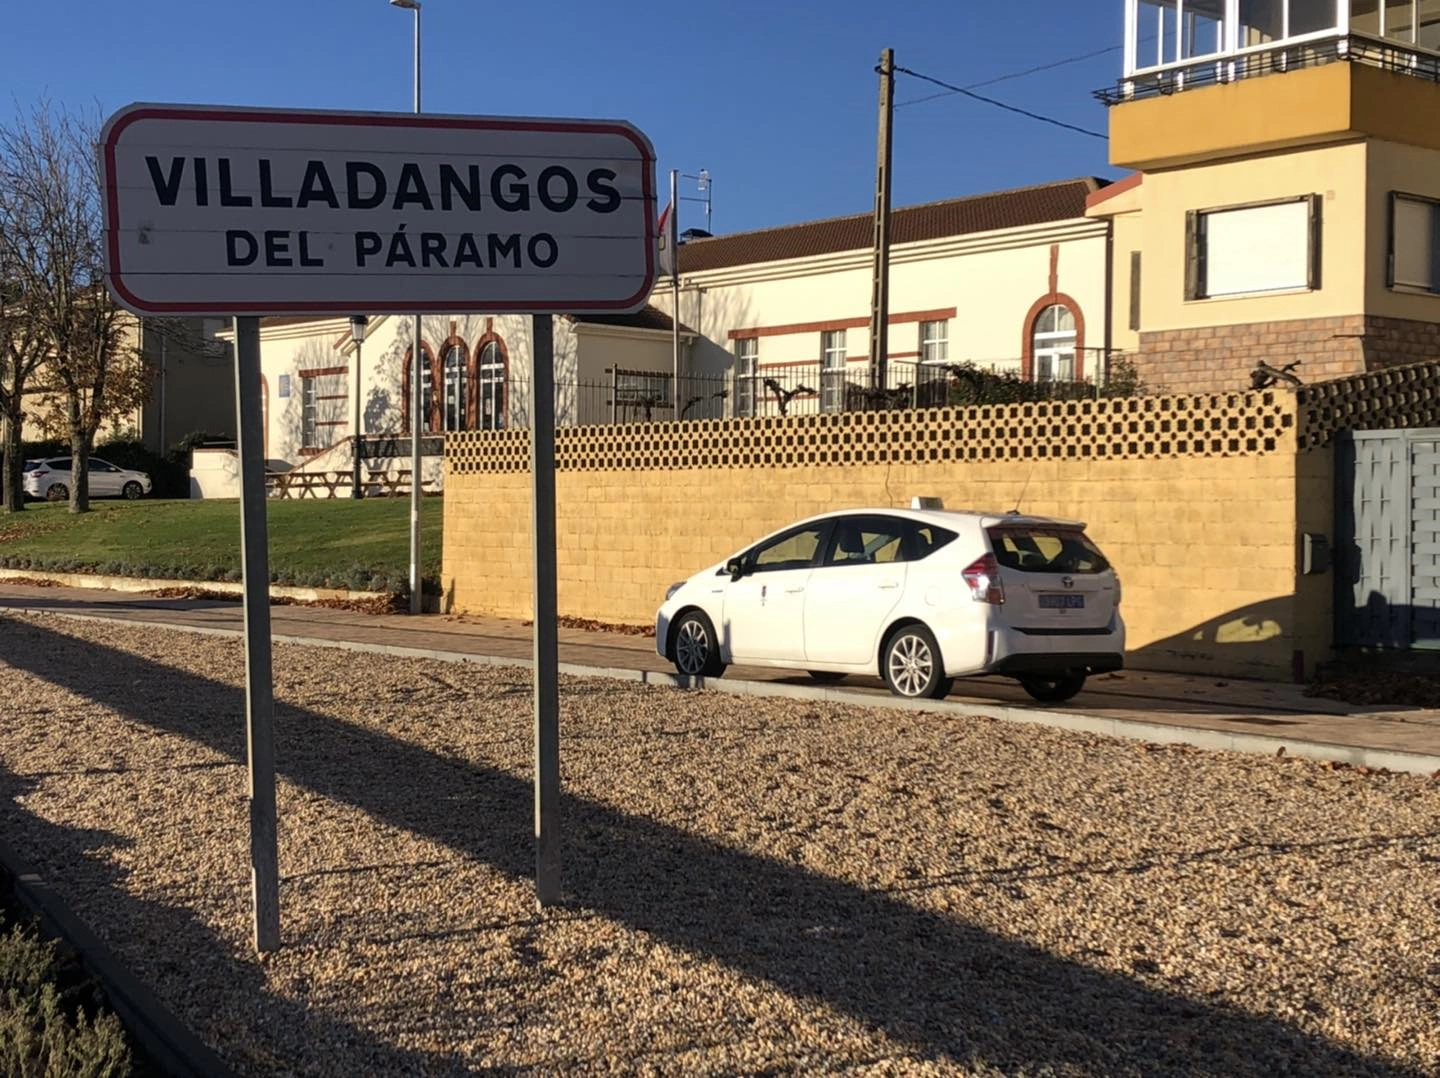 Taxi León Villadangos del Páramo